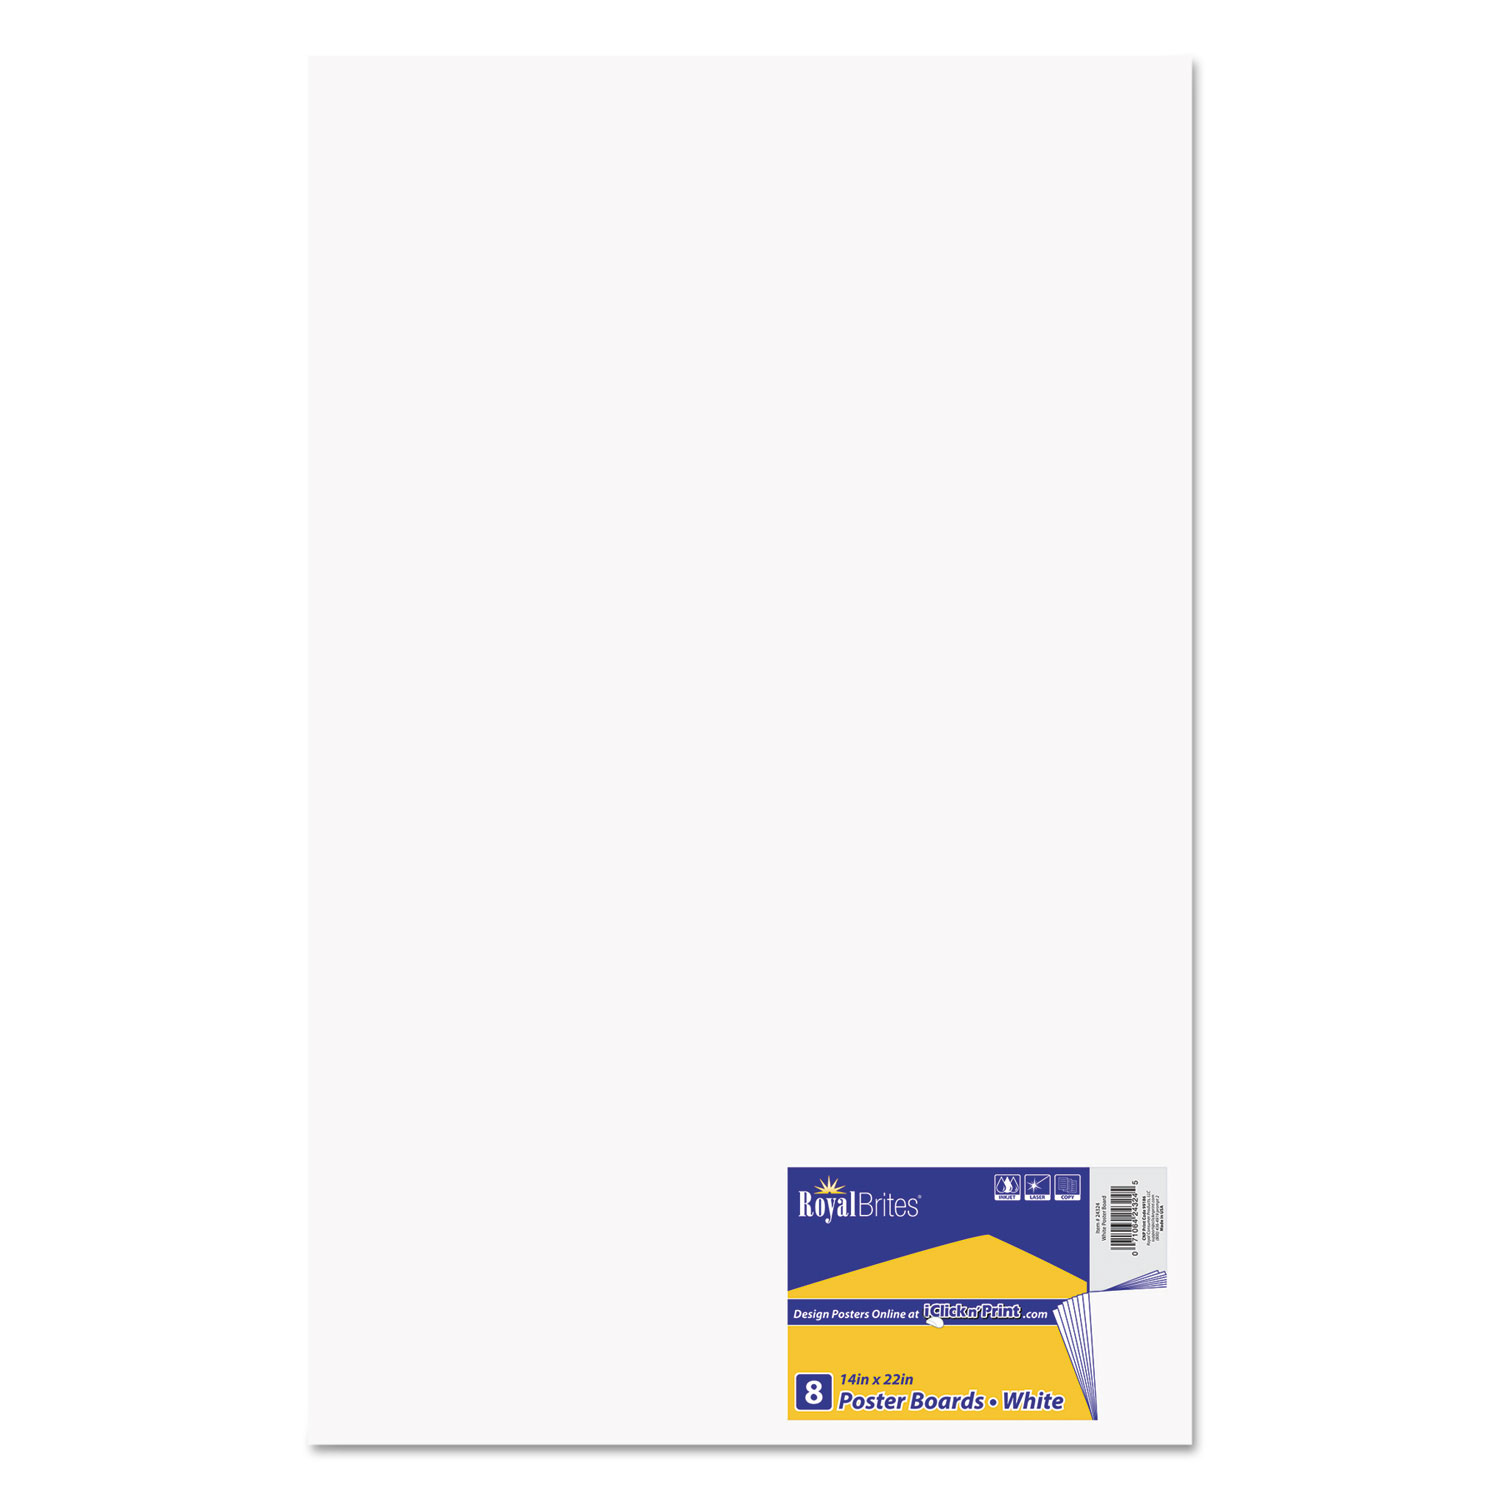 Royal Brites® White Poster Board, 8 pk - Kroger